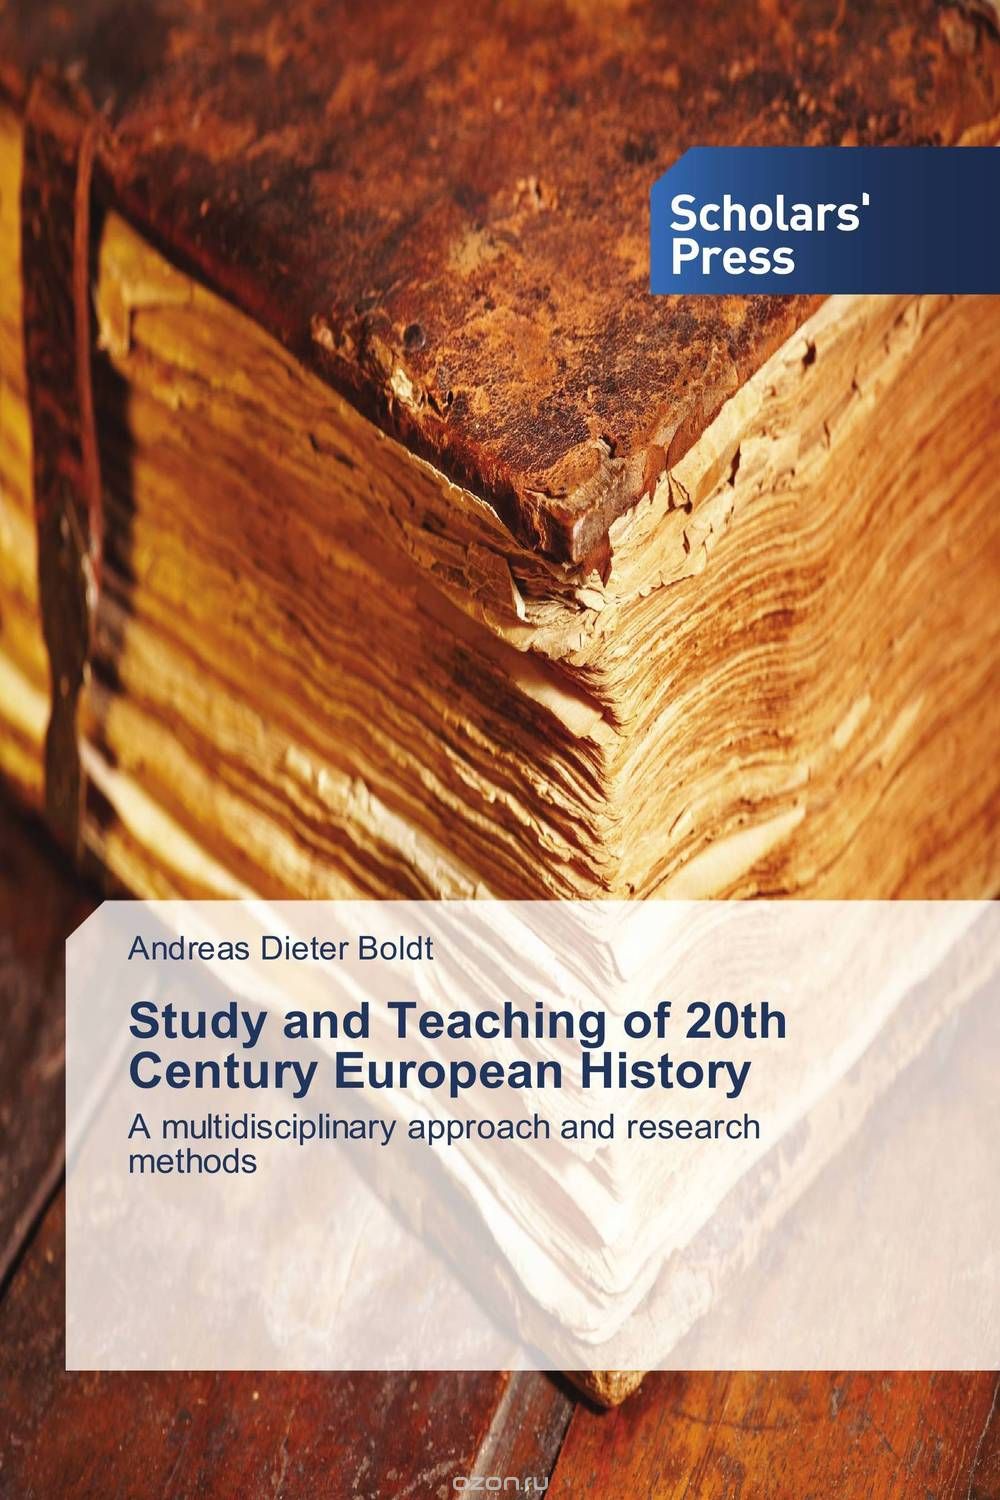 Скачать книгу "Study and Teaching of 20th Century European History"